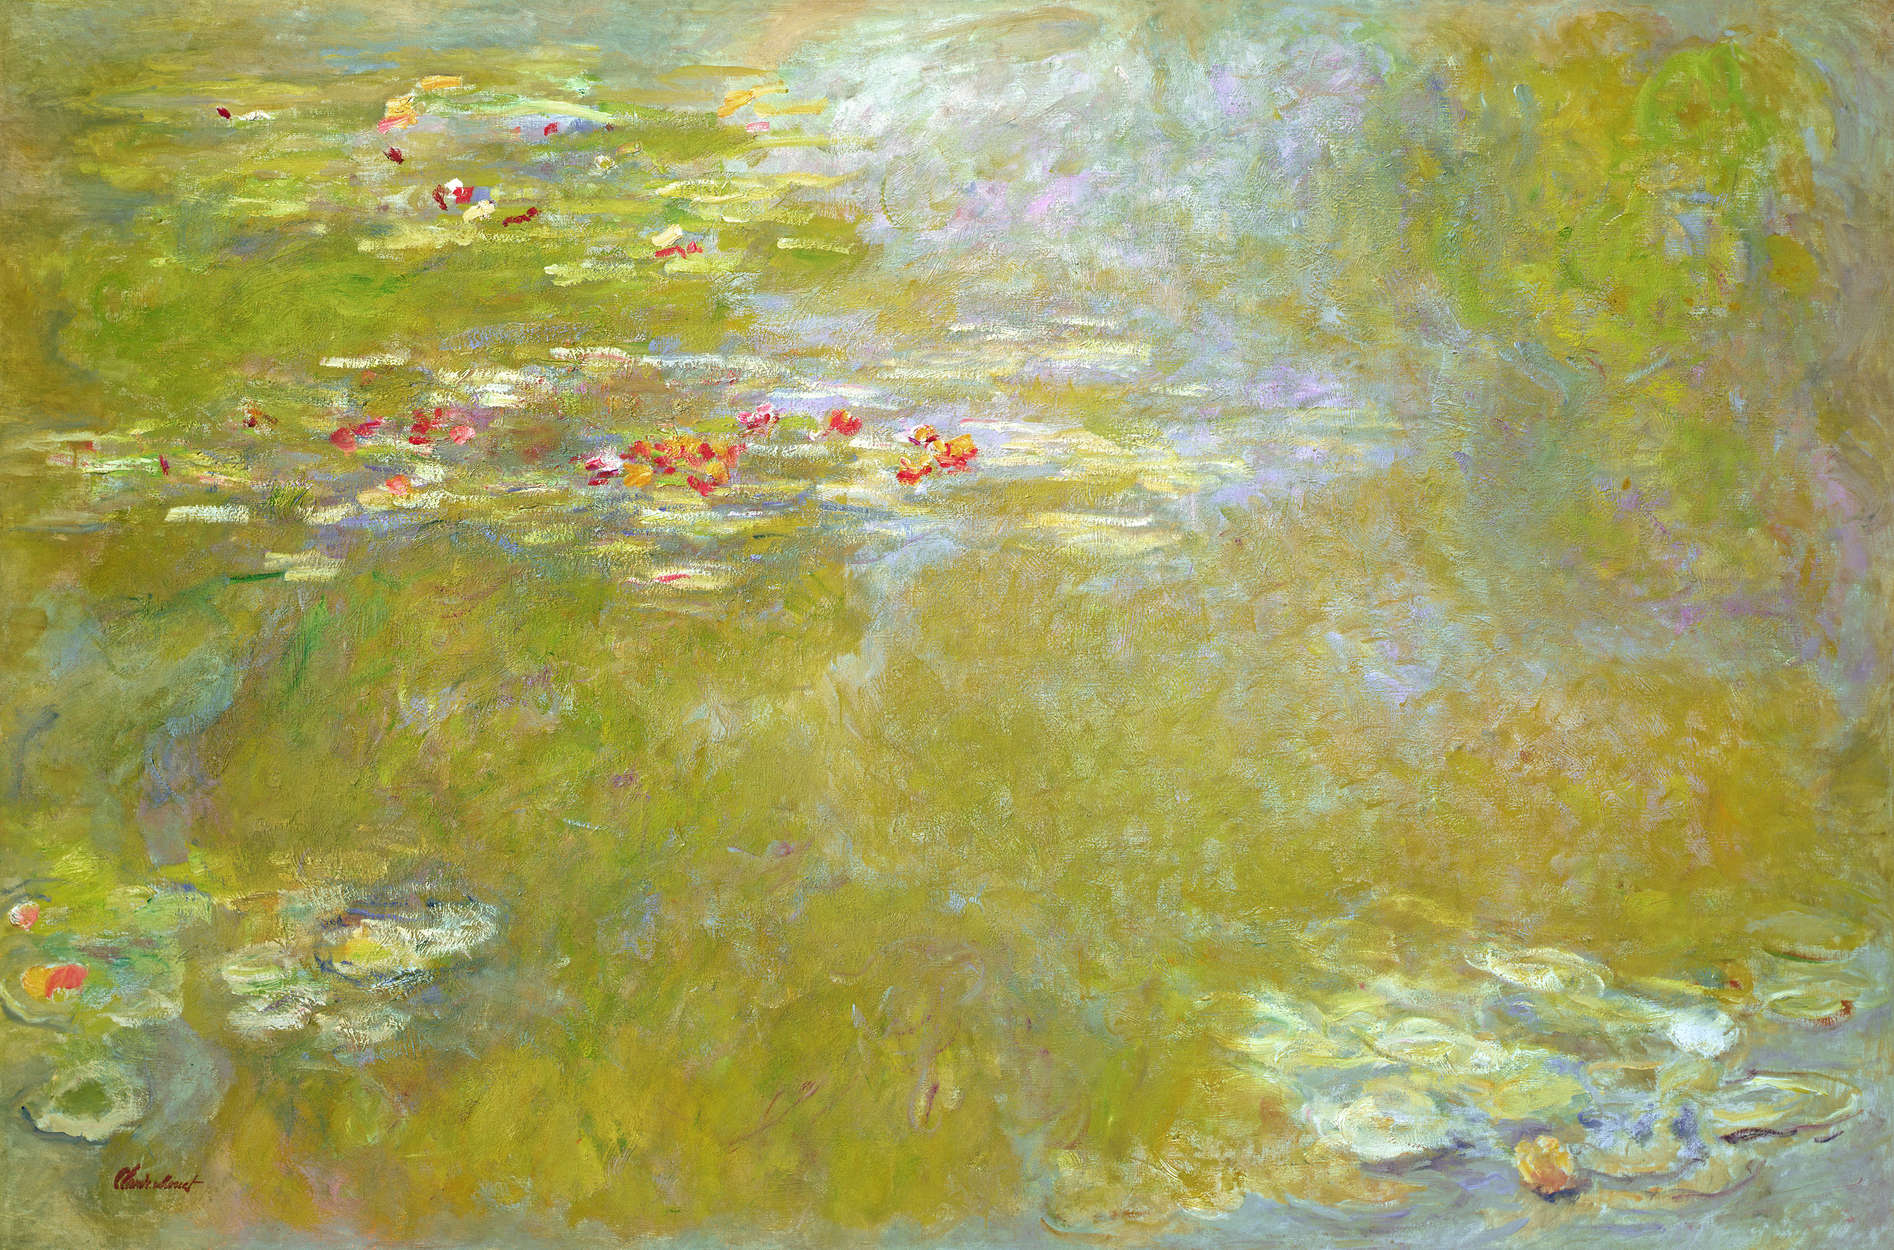             De Nimfen" muurschildering van Claude Monet
        